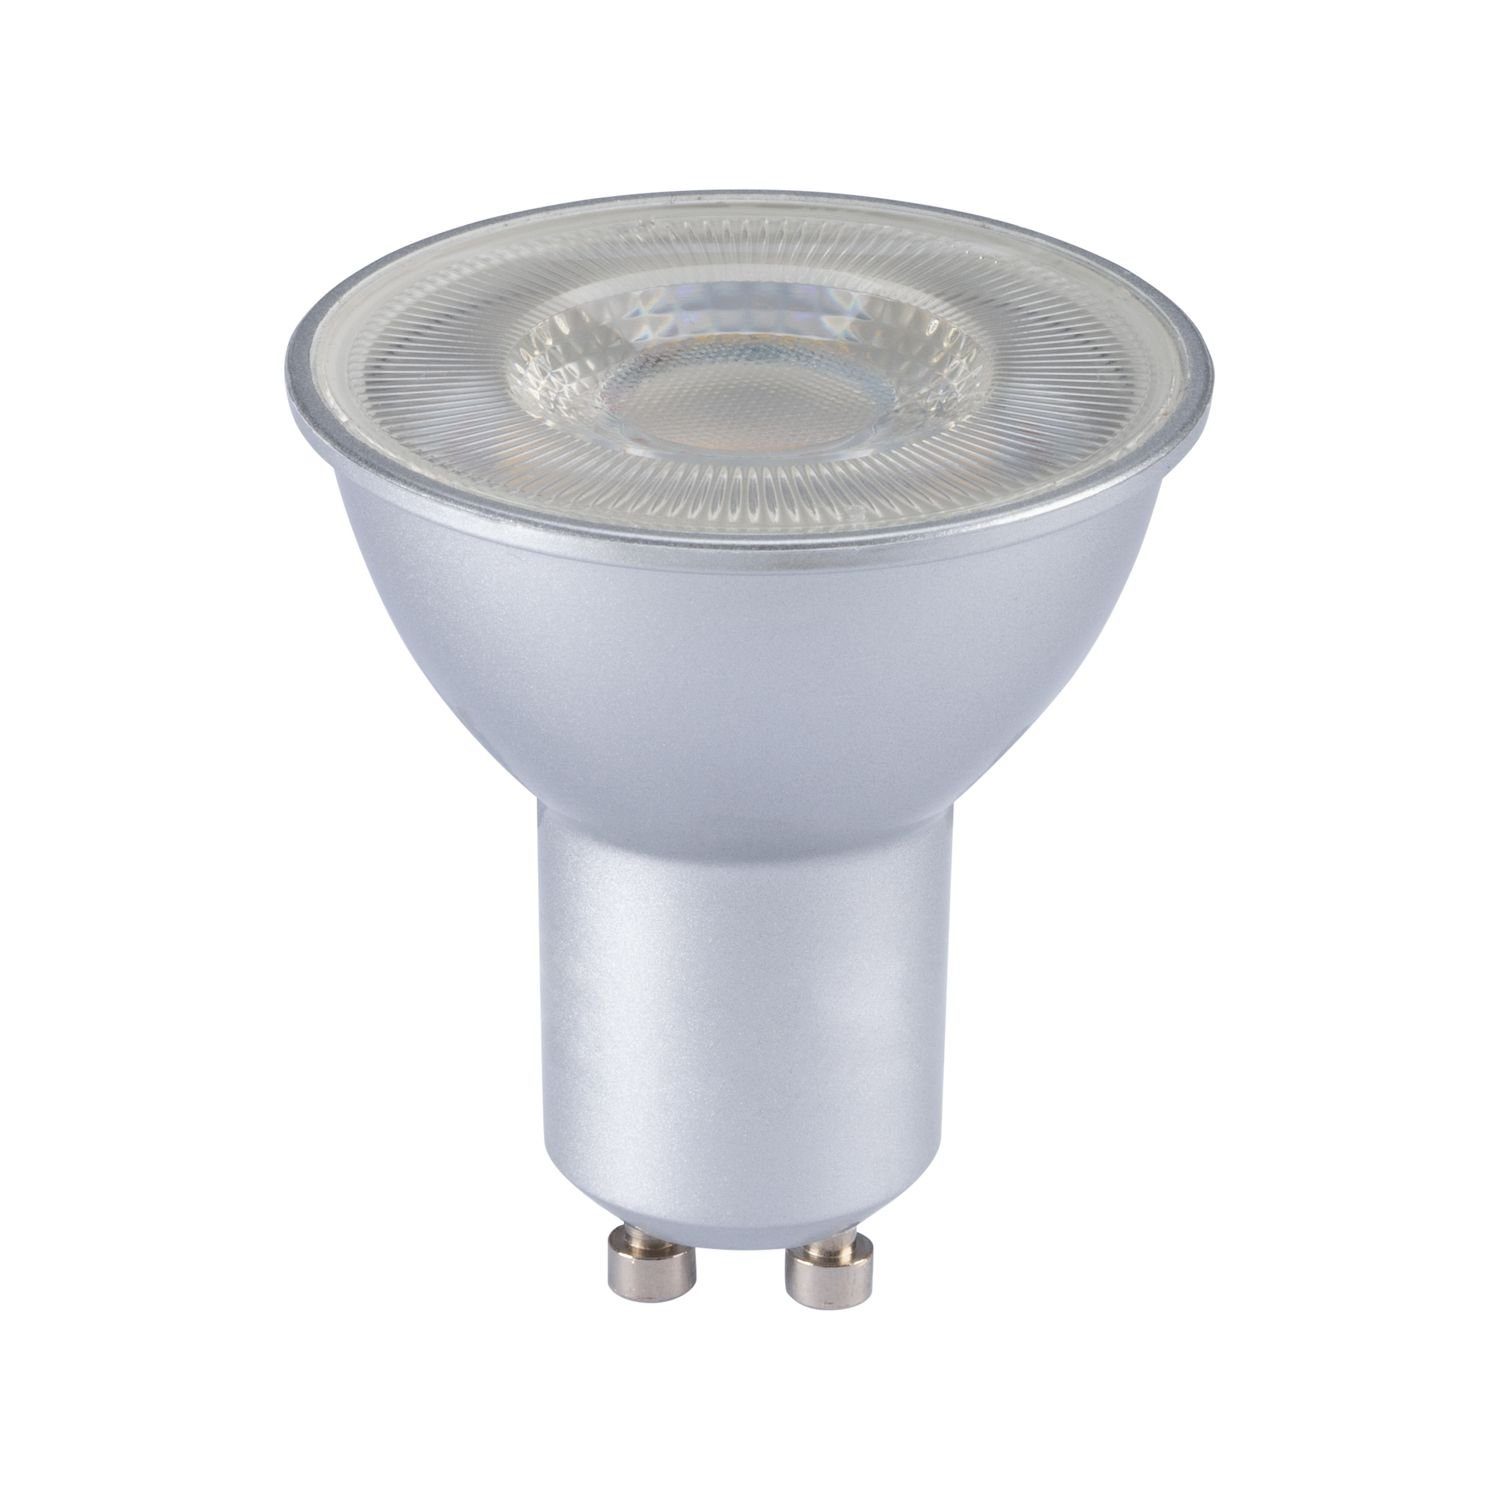 Set Markenstrahler LED Weiß IP44 3er von LED L LEDANDO Einbaustrahler Einbaustrahler LED GU10 mit